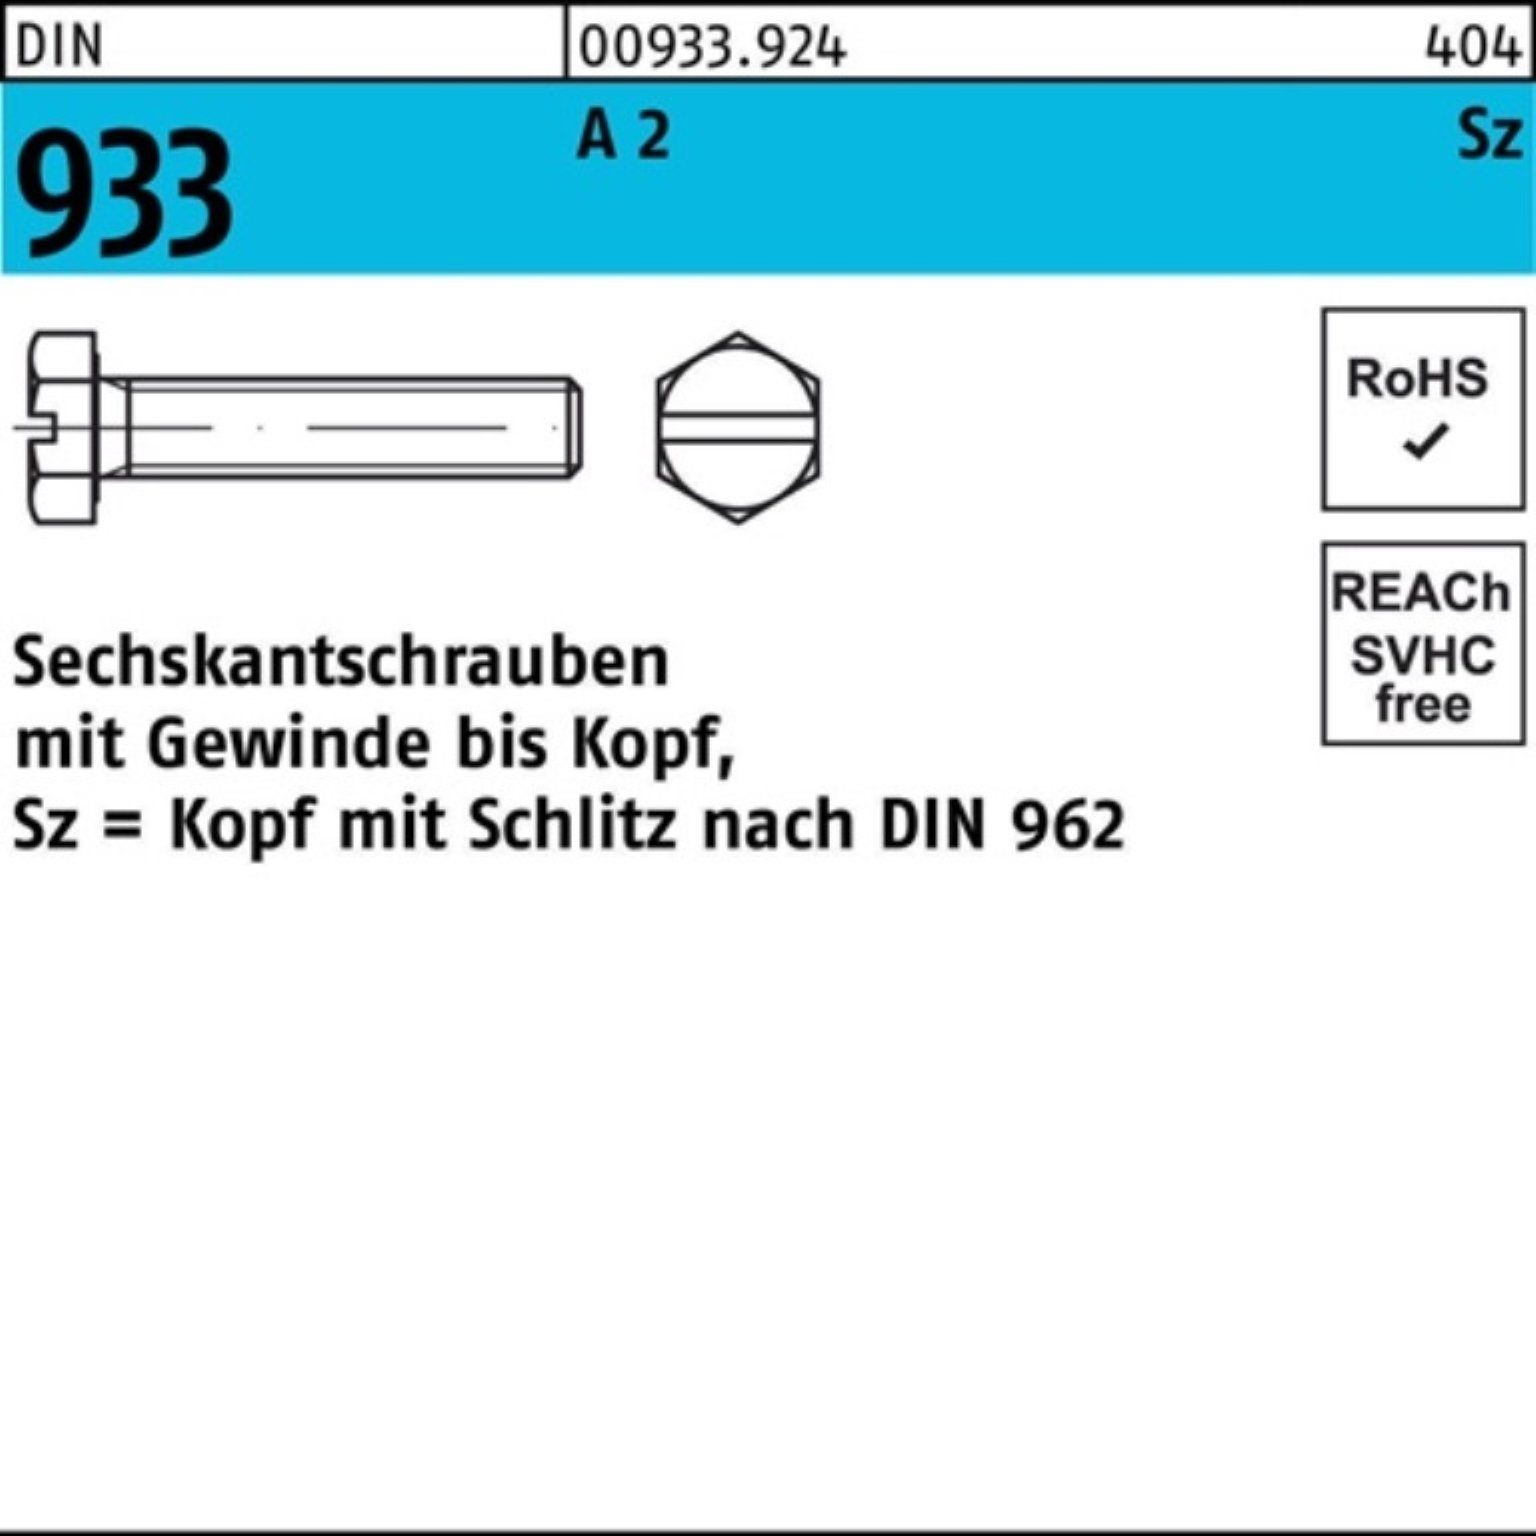 Pack 933 VG/Schlitz A Reyher Sechskantschraube 2 100 M5x DIN Sechskantschraube 30 Stück 100er